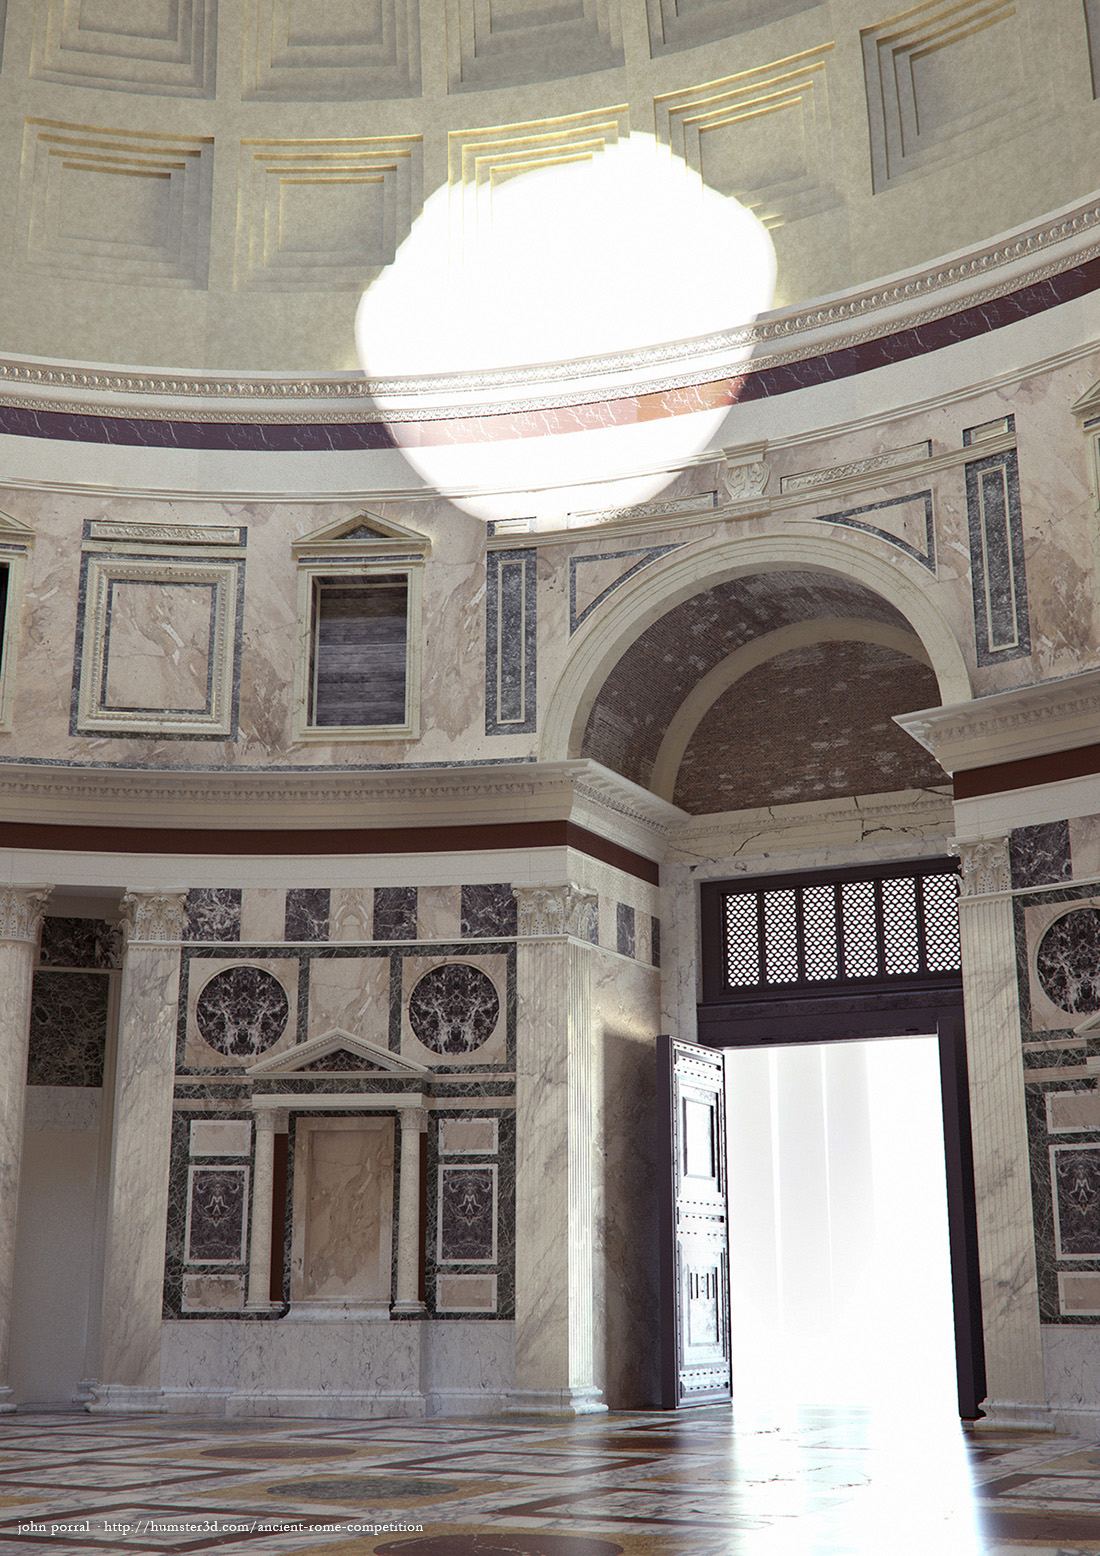 The Pantheon 3d art